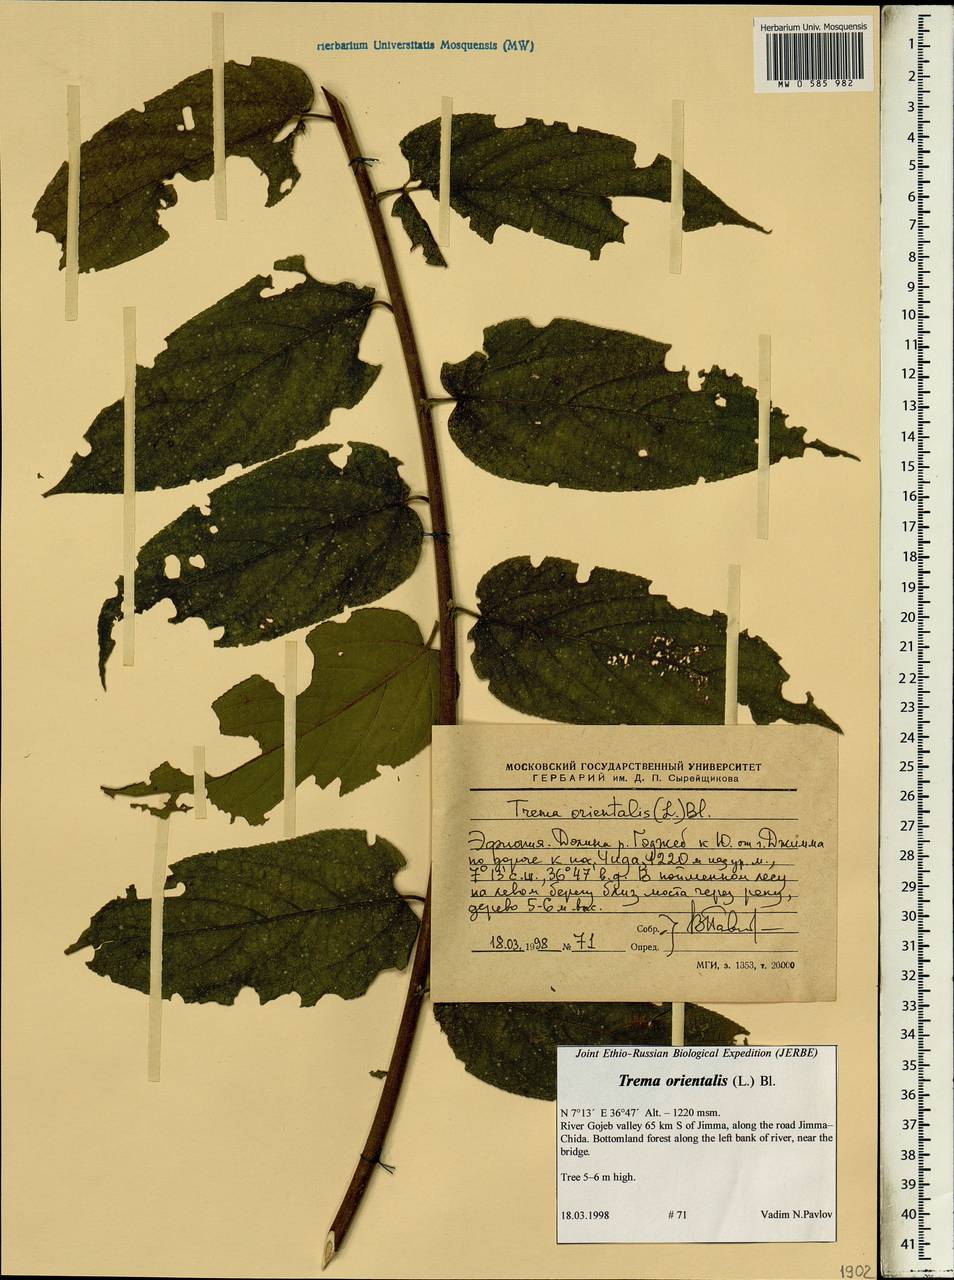 Trema orientalis (L.) Bl., Africa (AFR) (Ethiopia)